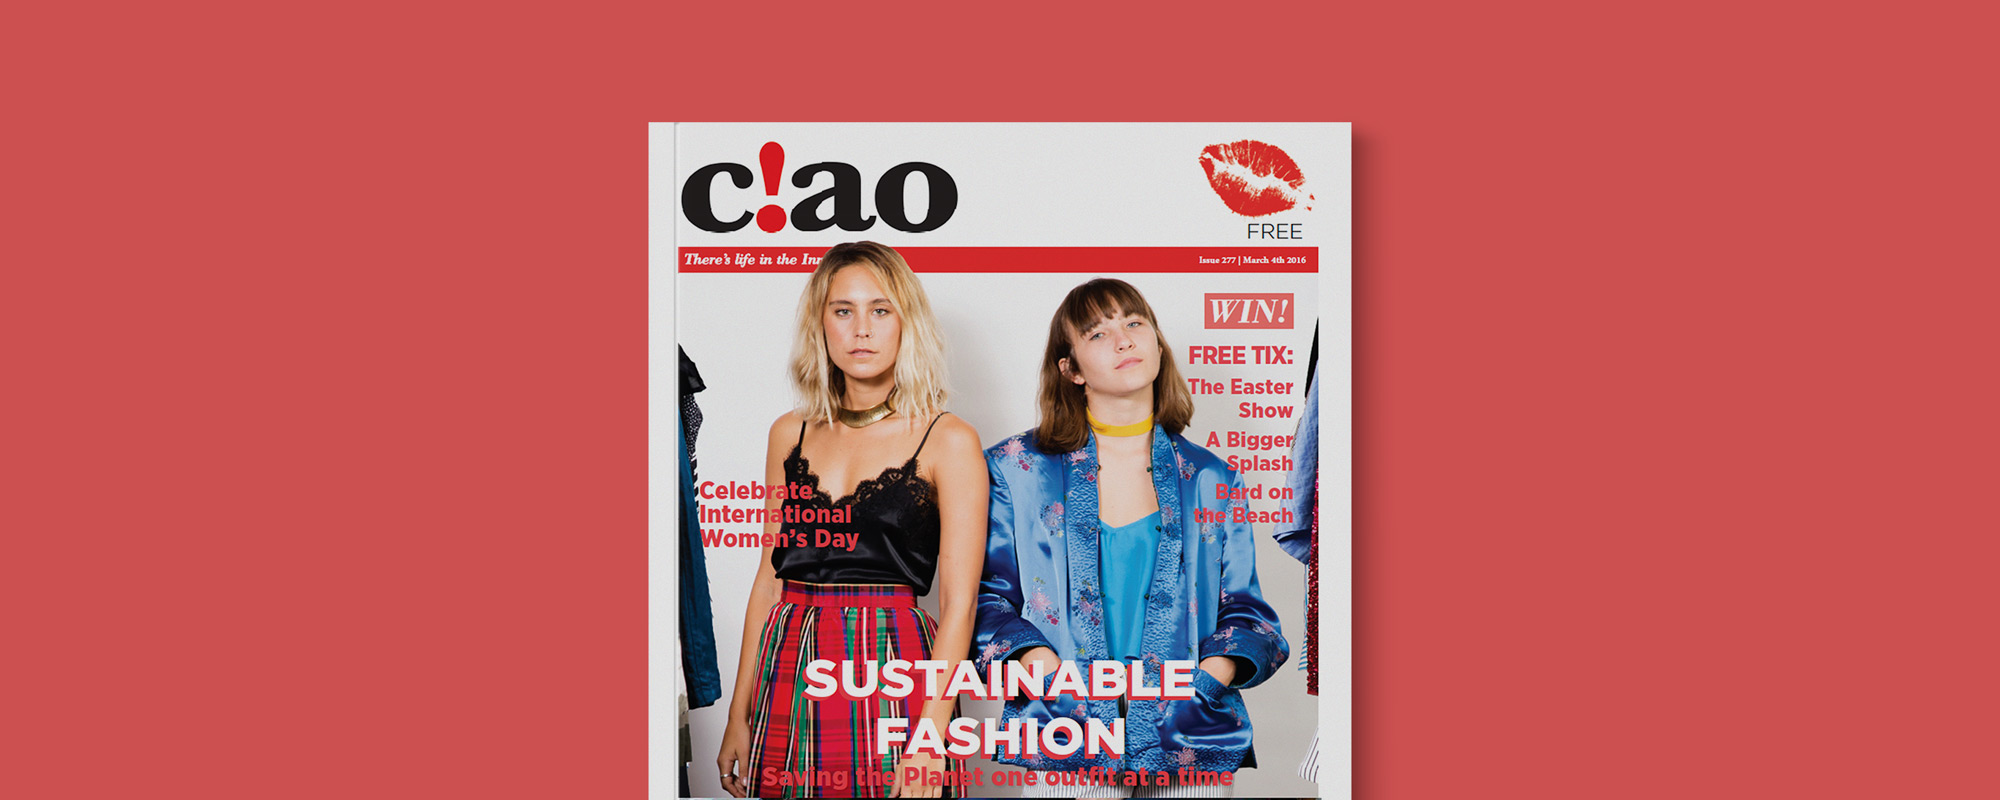 Ciao magazine cover design